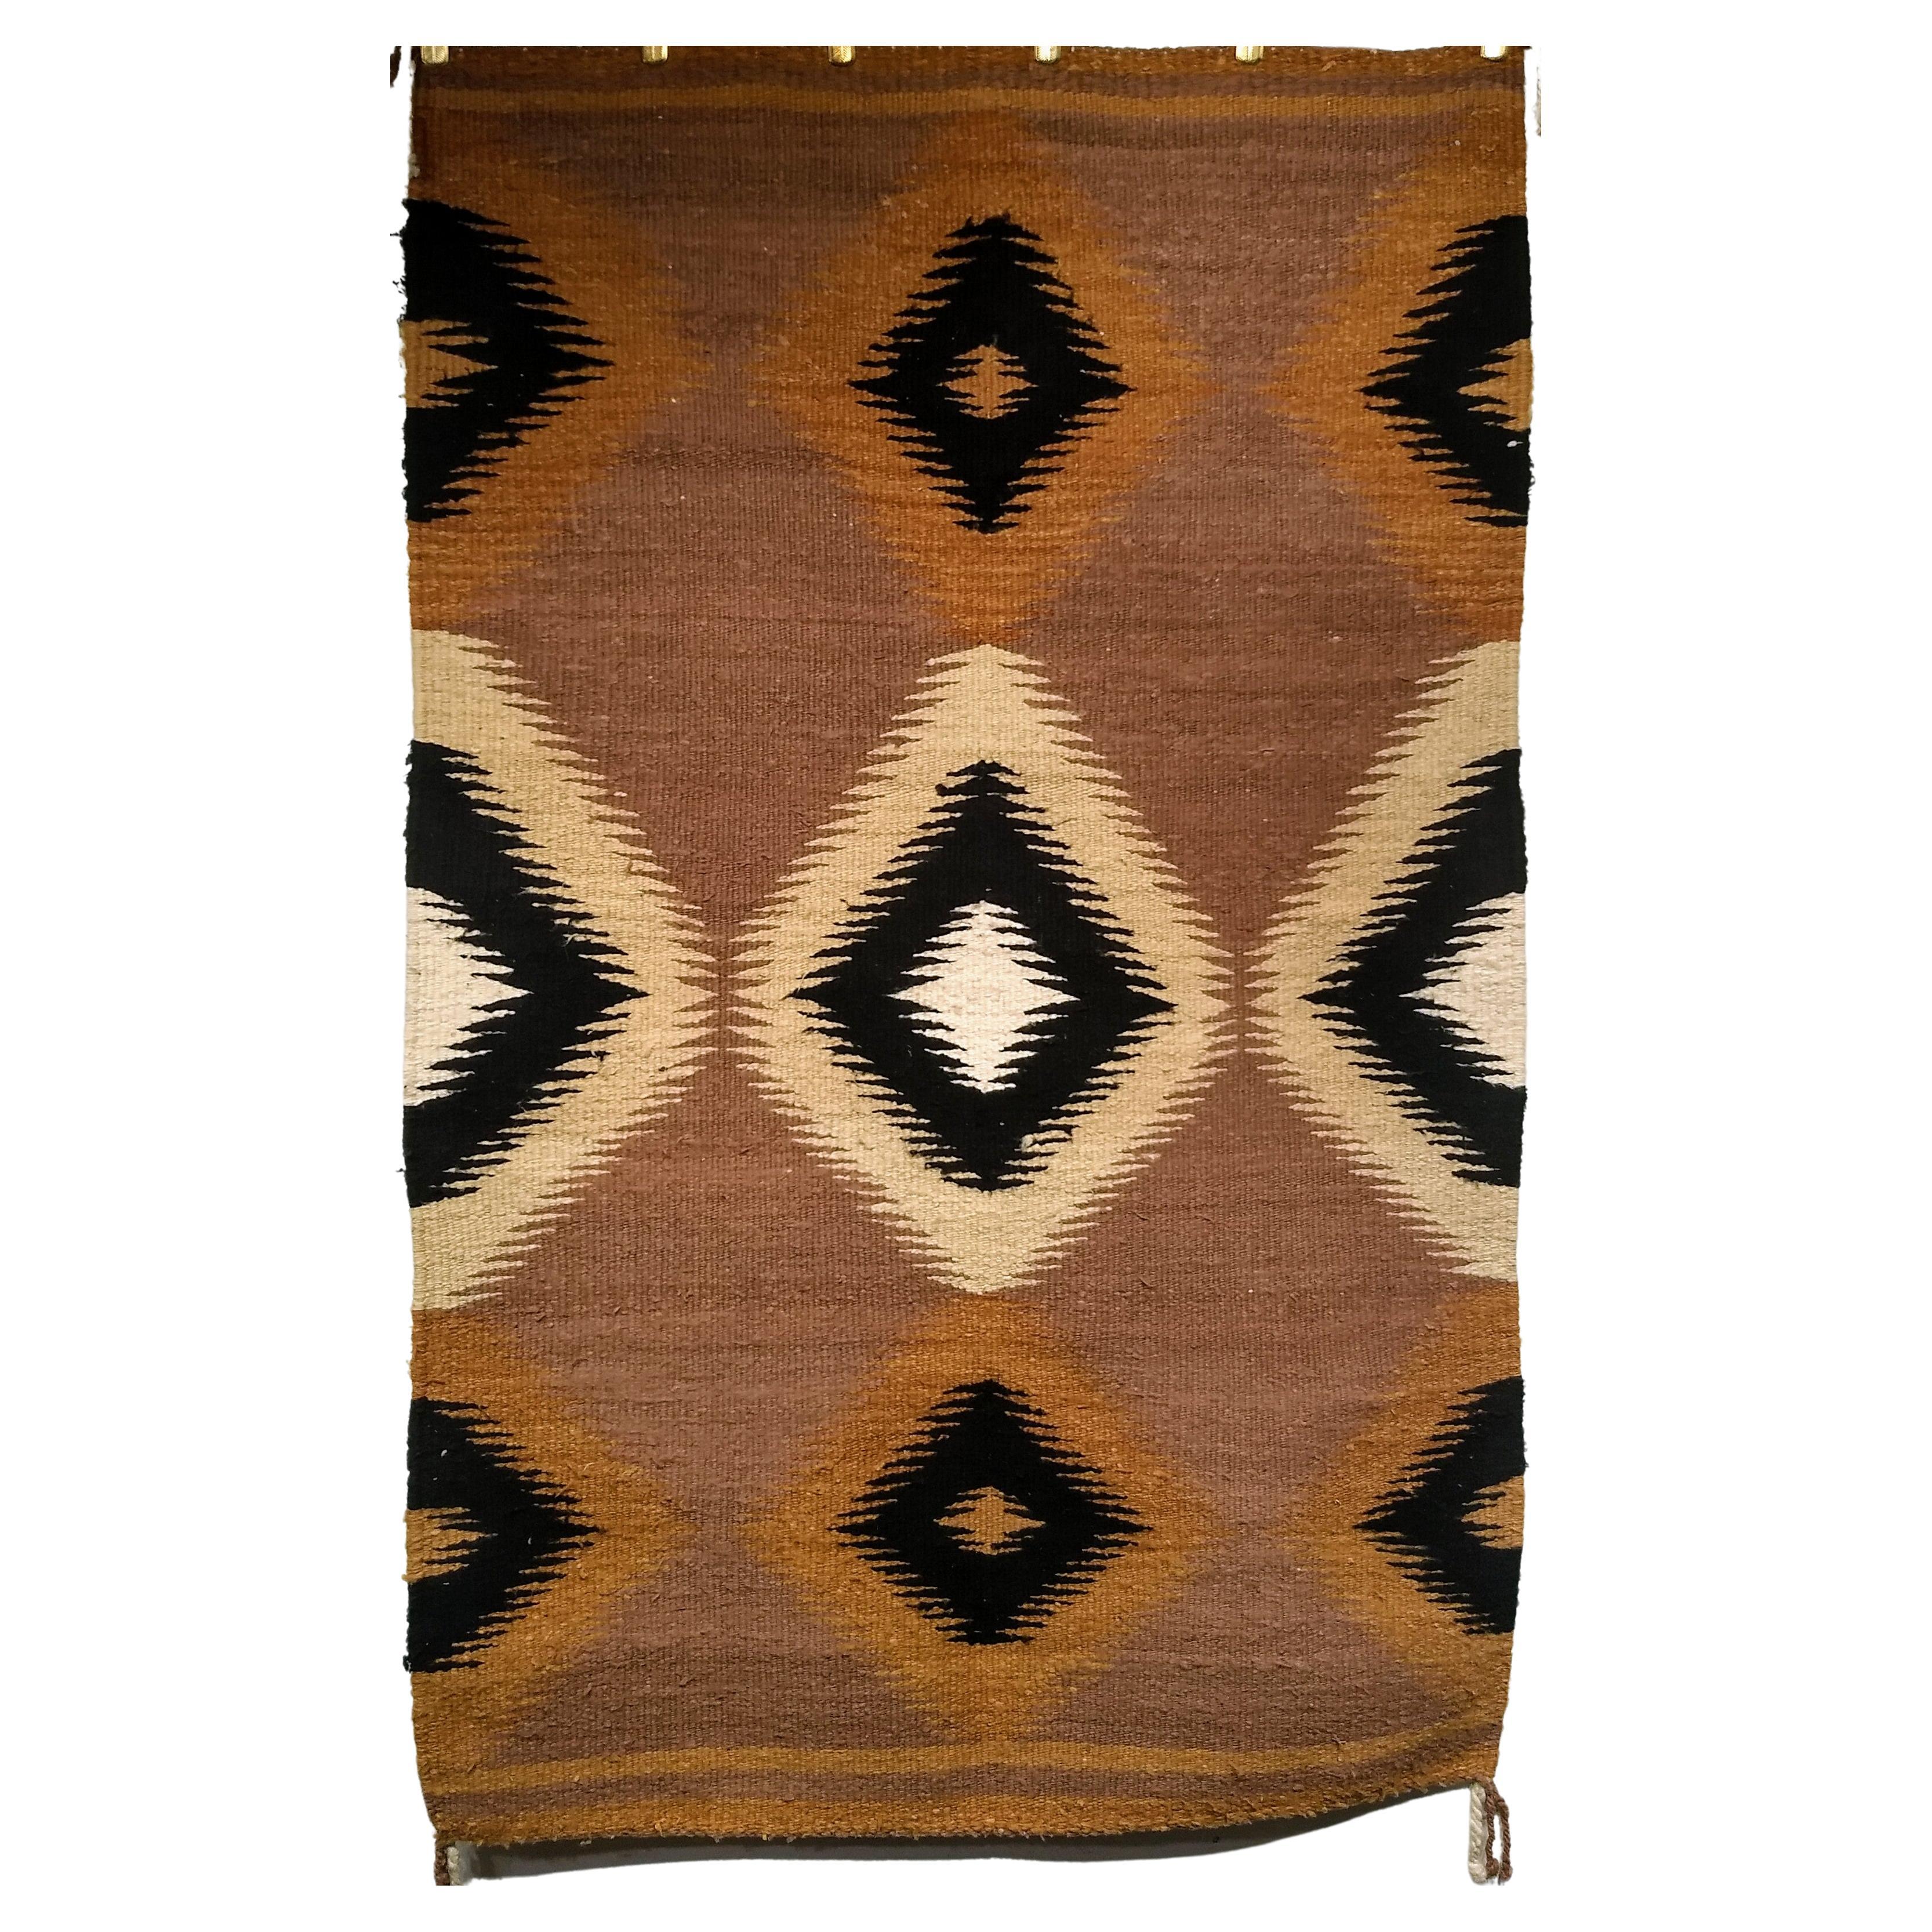  Amerikanischer Navajo-Teppich mit Eye Dazzler-Muster in Elfenbein, Brown, Schwarz